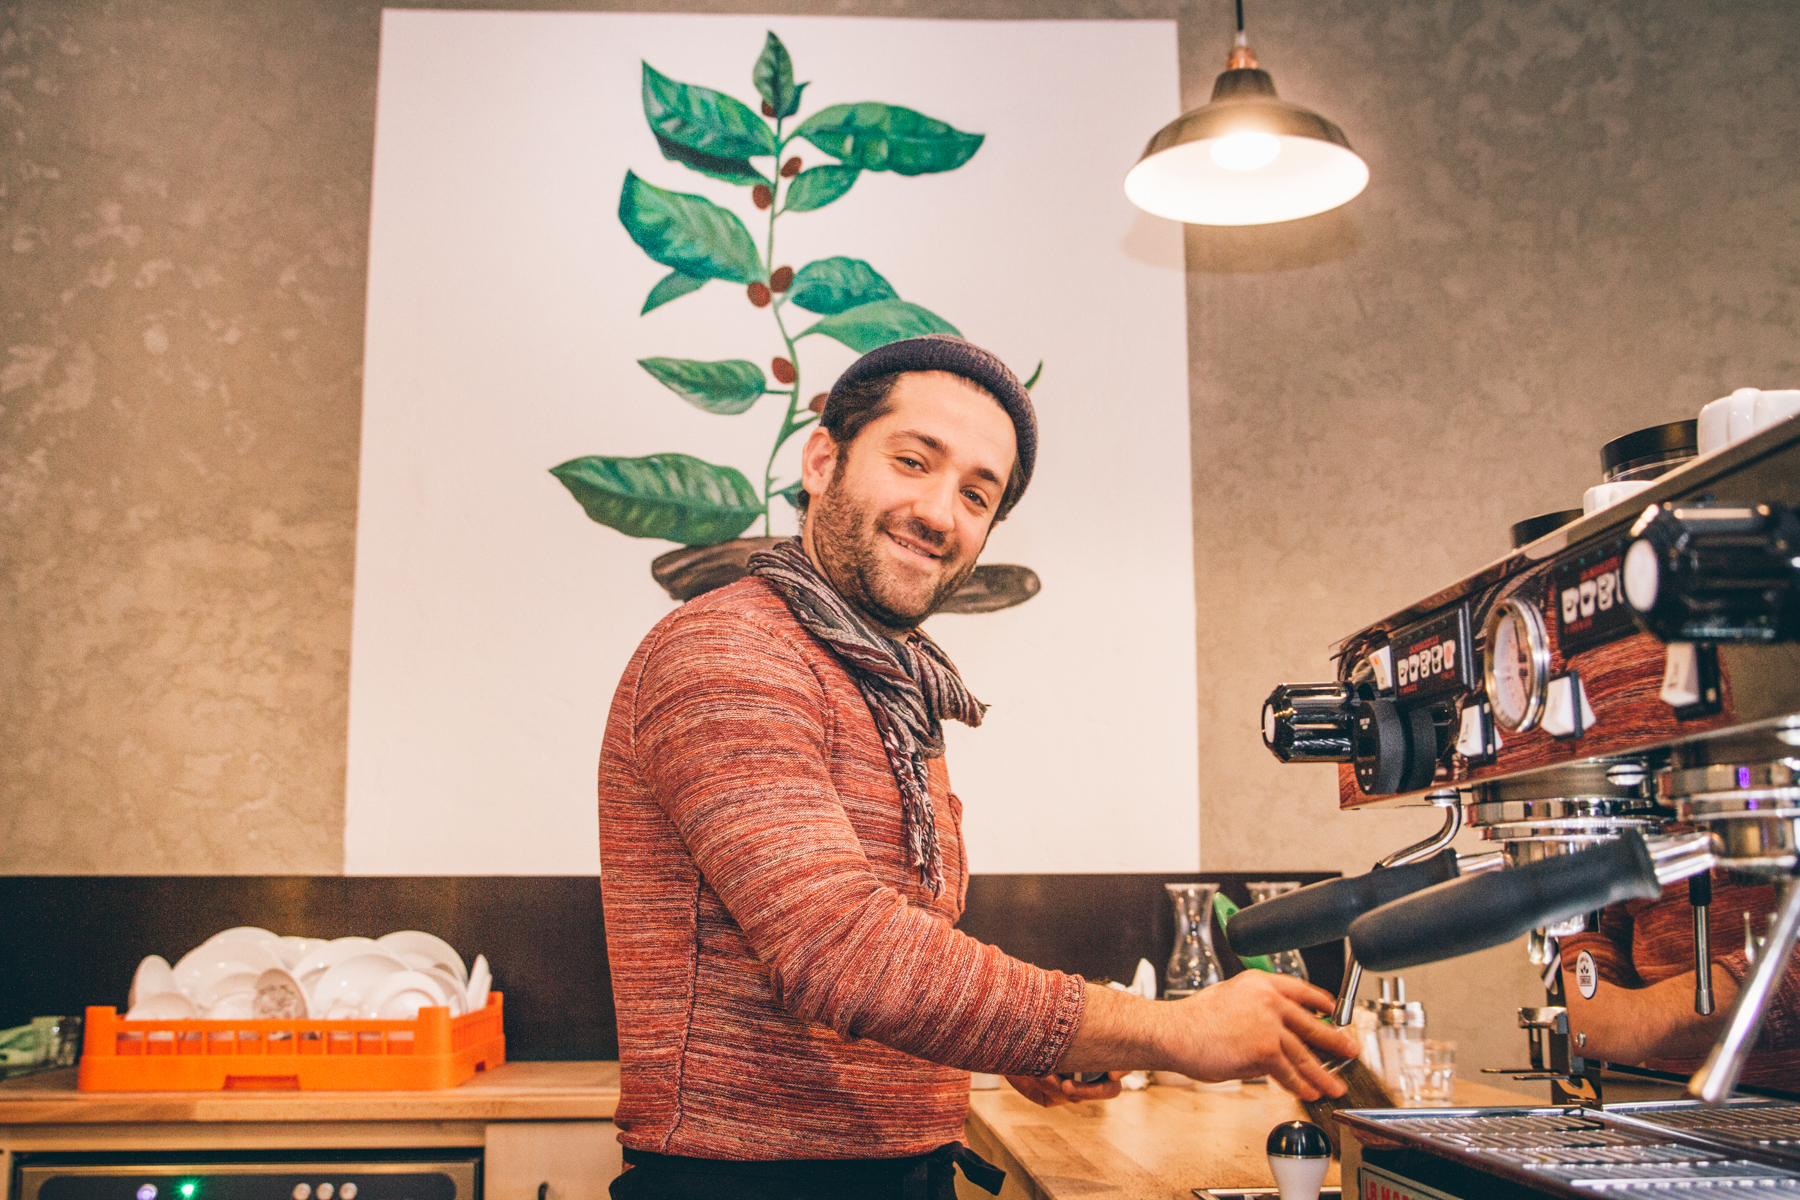 Serdar hat sich mit dem Beaver Coffee einen Traum verwirklicht. – ©wunderland media GmbH